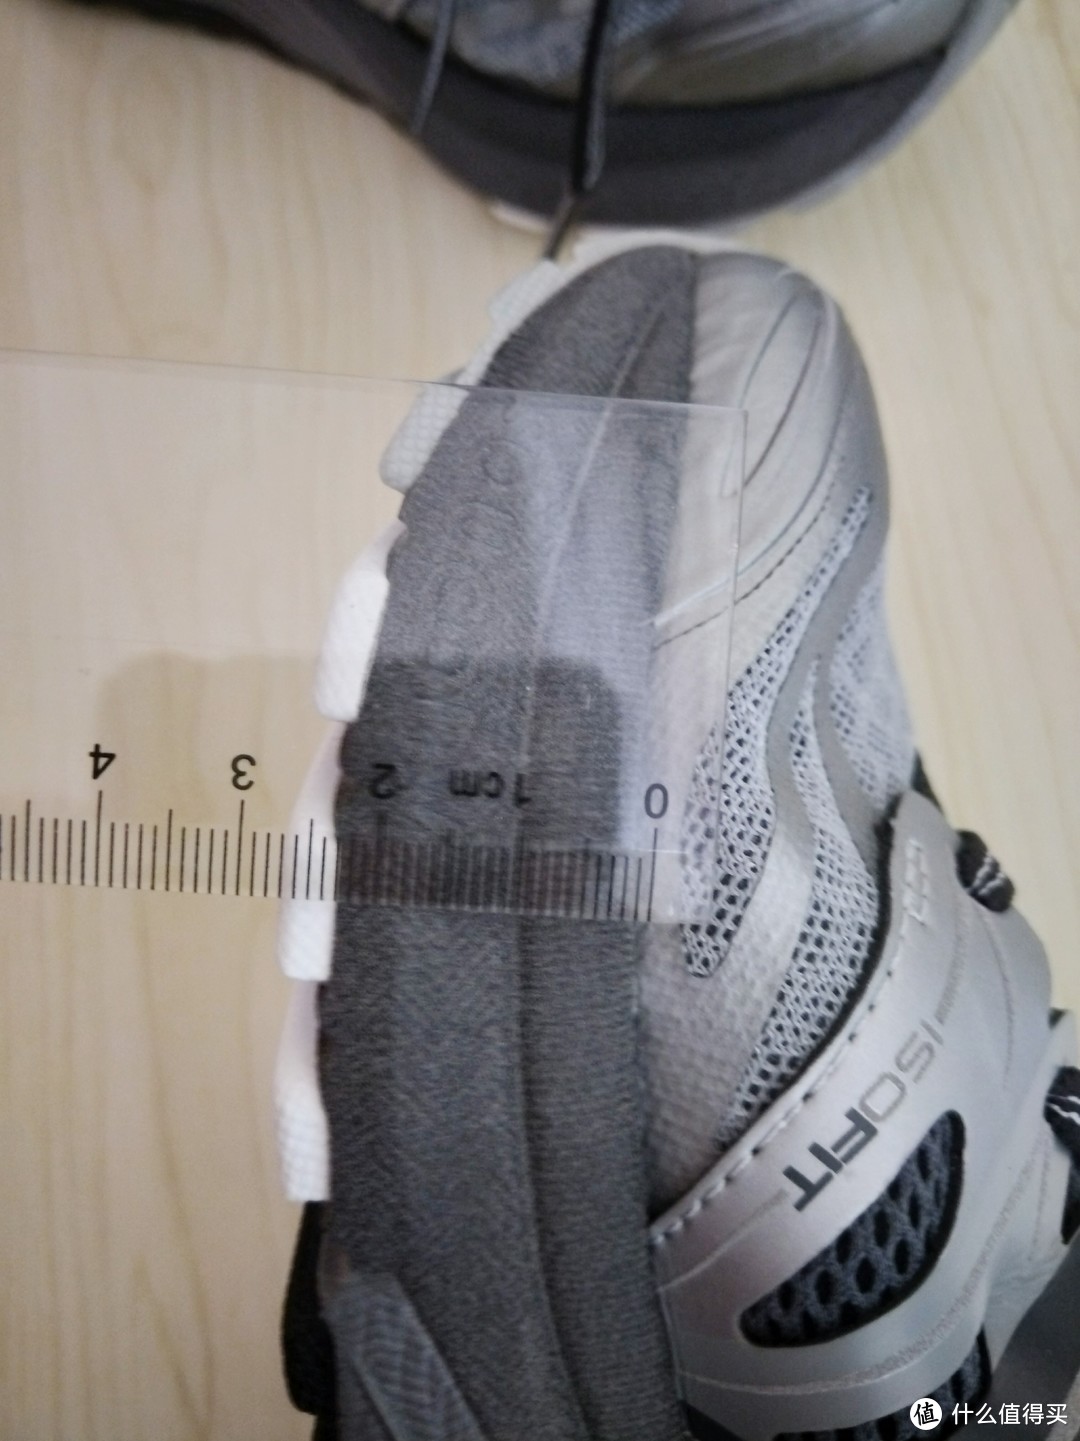 前掌27mm，作为支撑系的鞋款这鞋垫真的是有够厚了